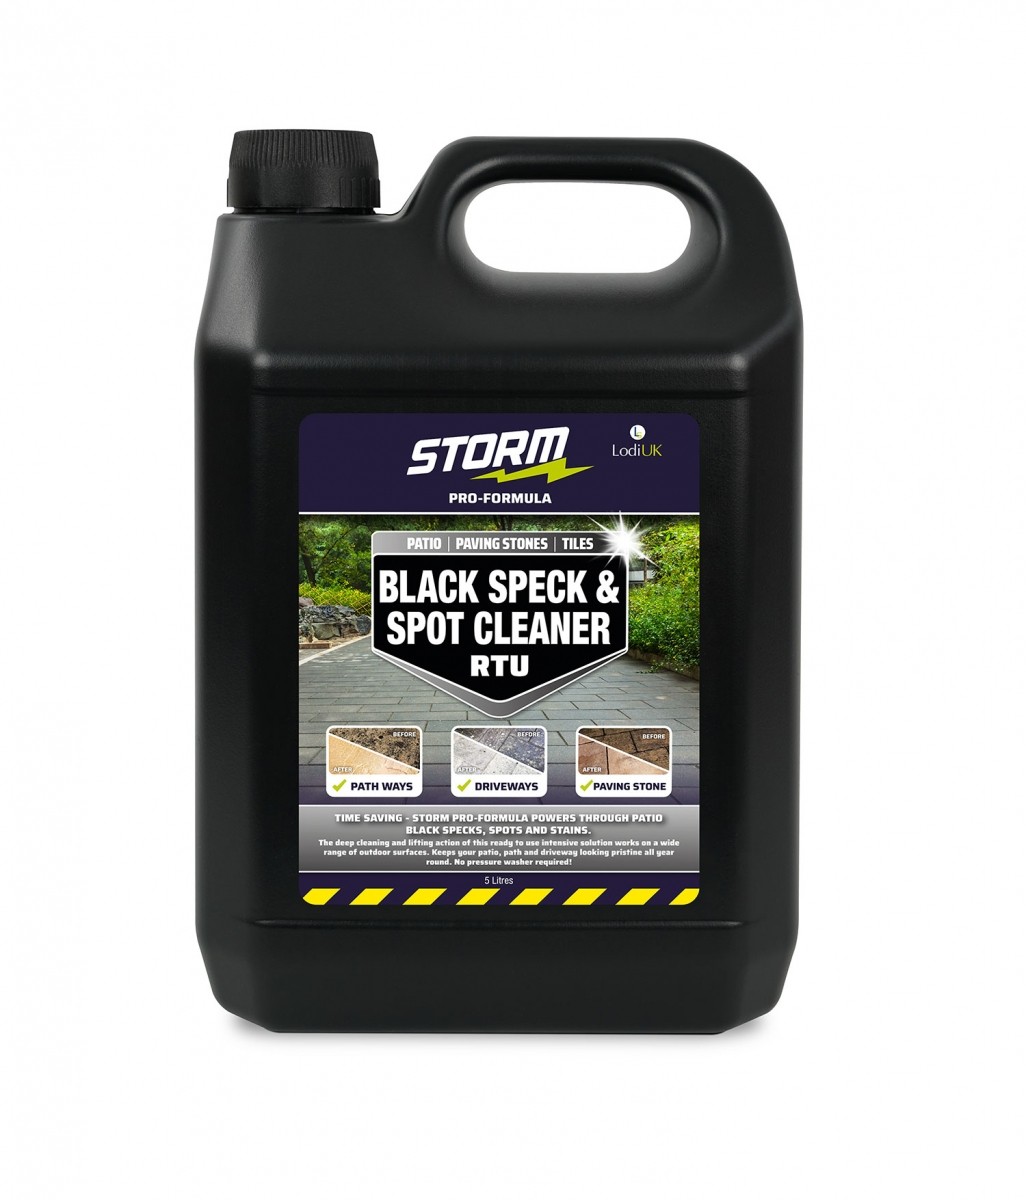 Storm Pro-Formula Black Speck & Spot Cleaner